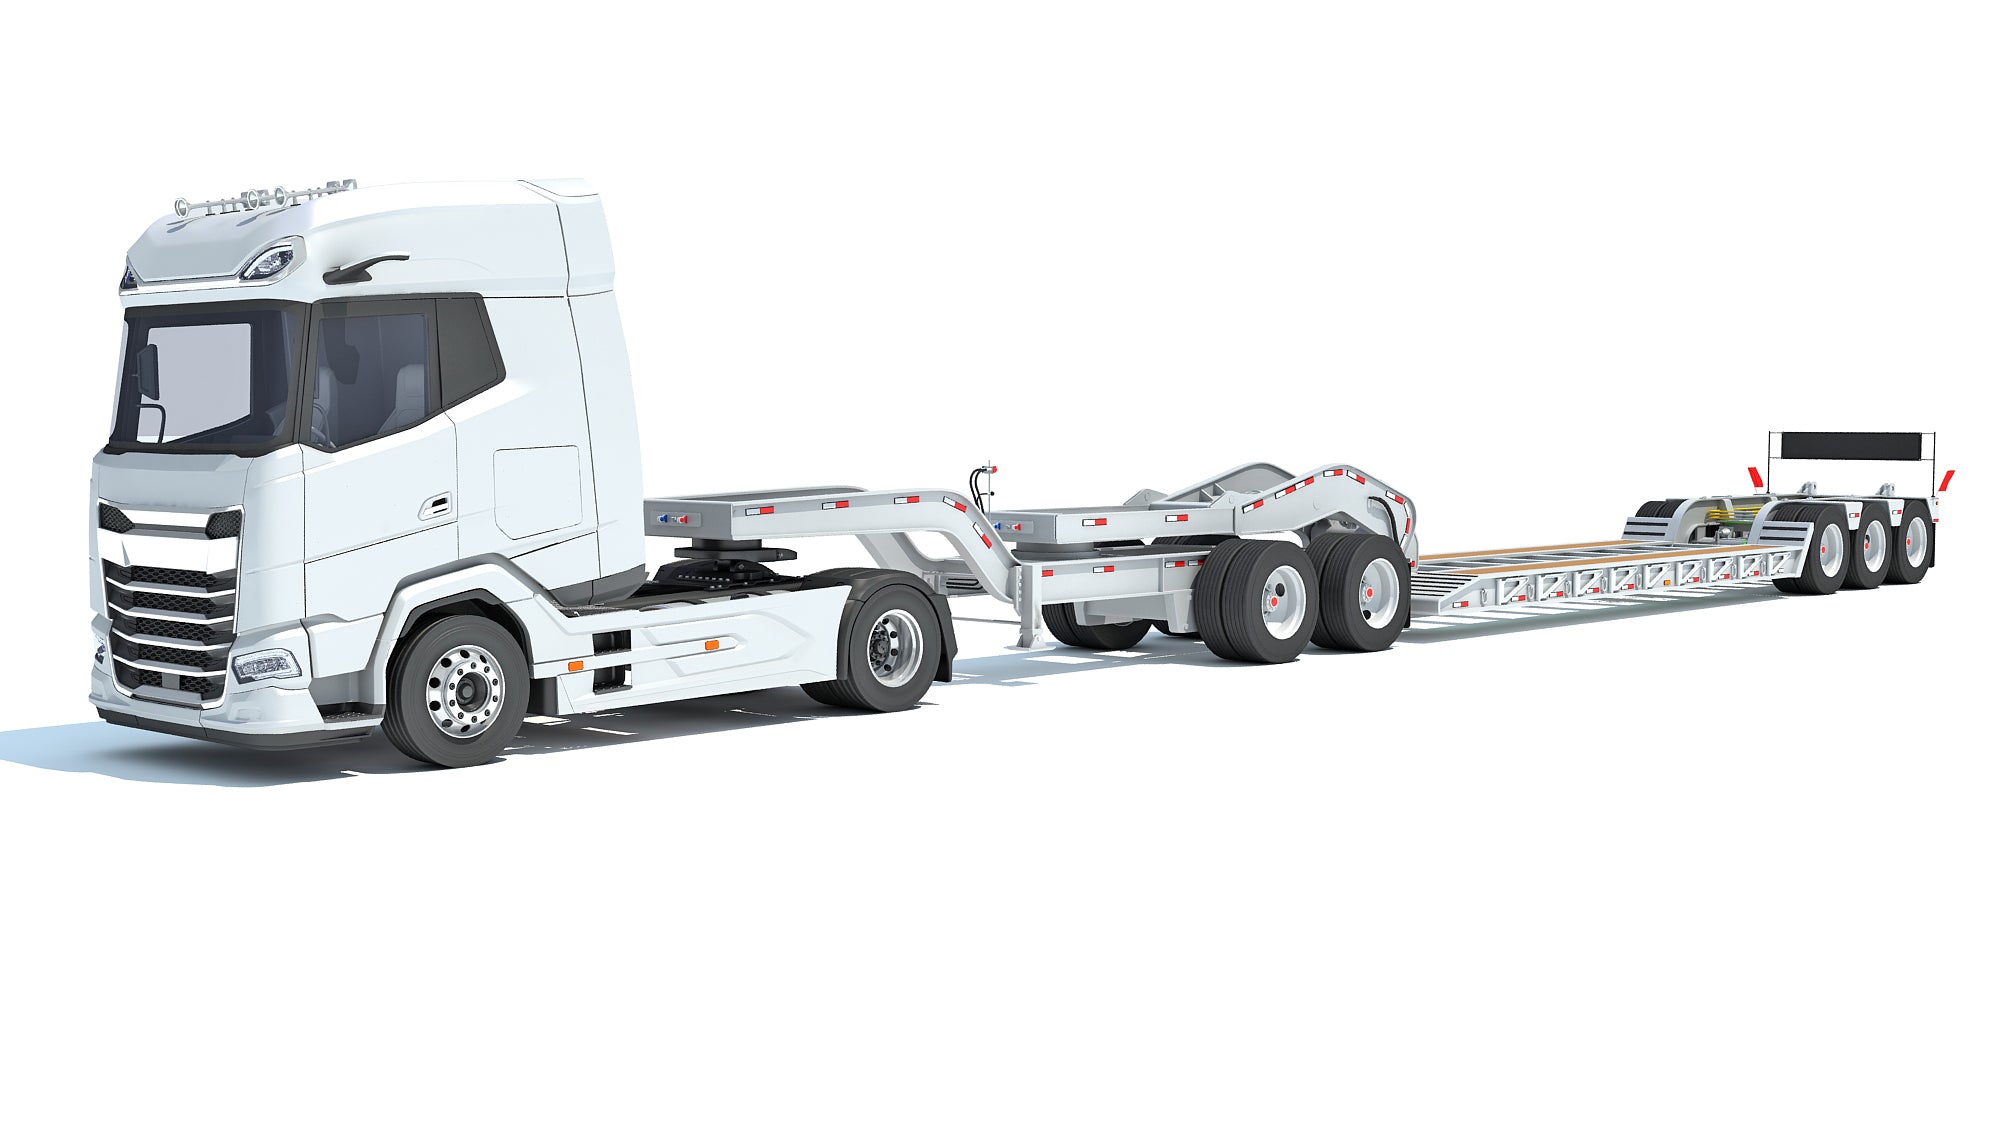 DAF Semi Truck with Lowboy Trailer